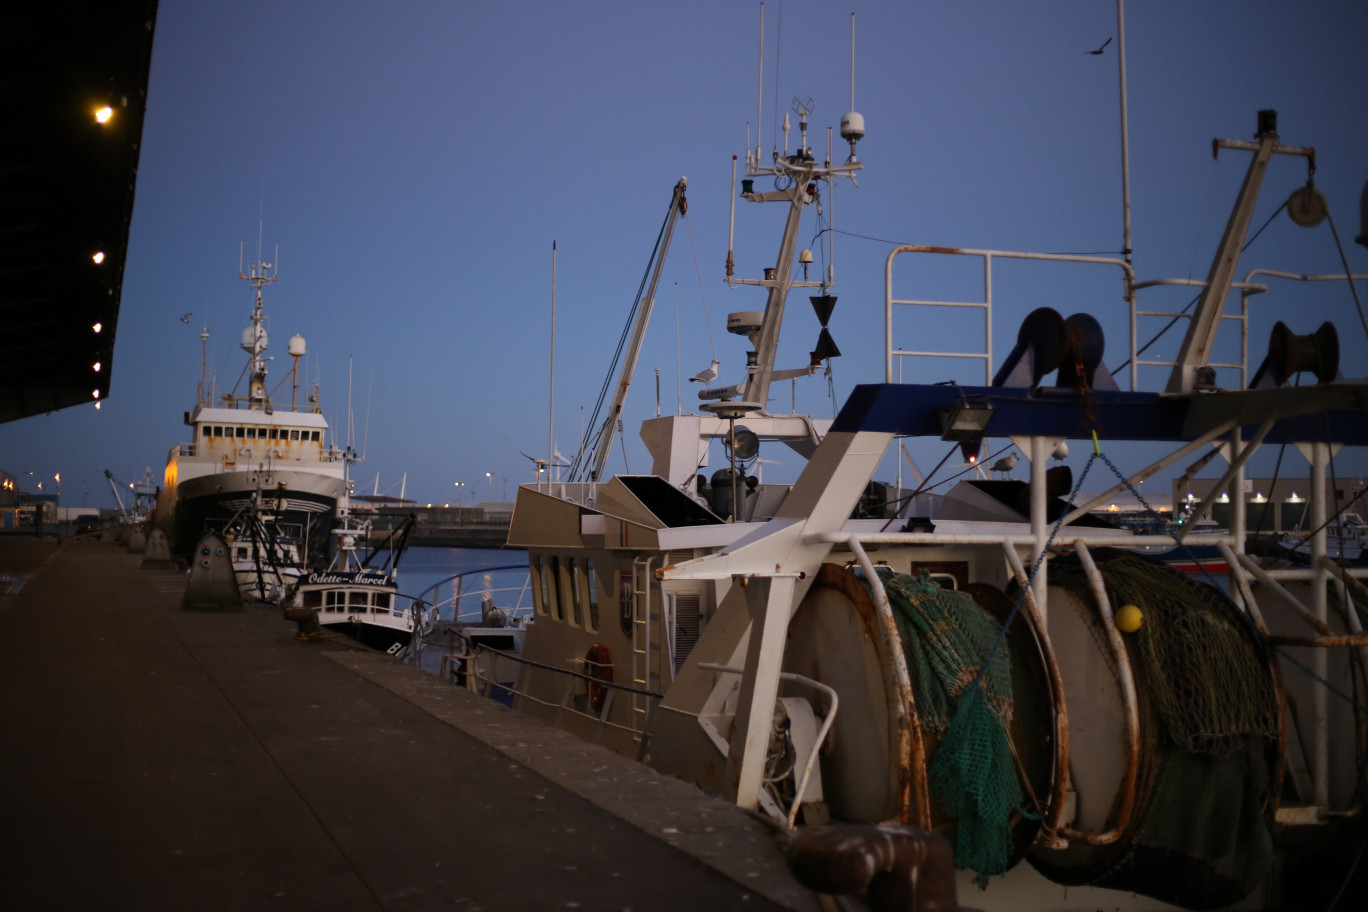 L’exploitation des eaux britanniques par les pêcheurs européens reste un enjeu clé du Brexit. (© Aletheia Press / C.Escaillet)